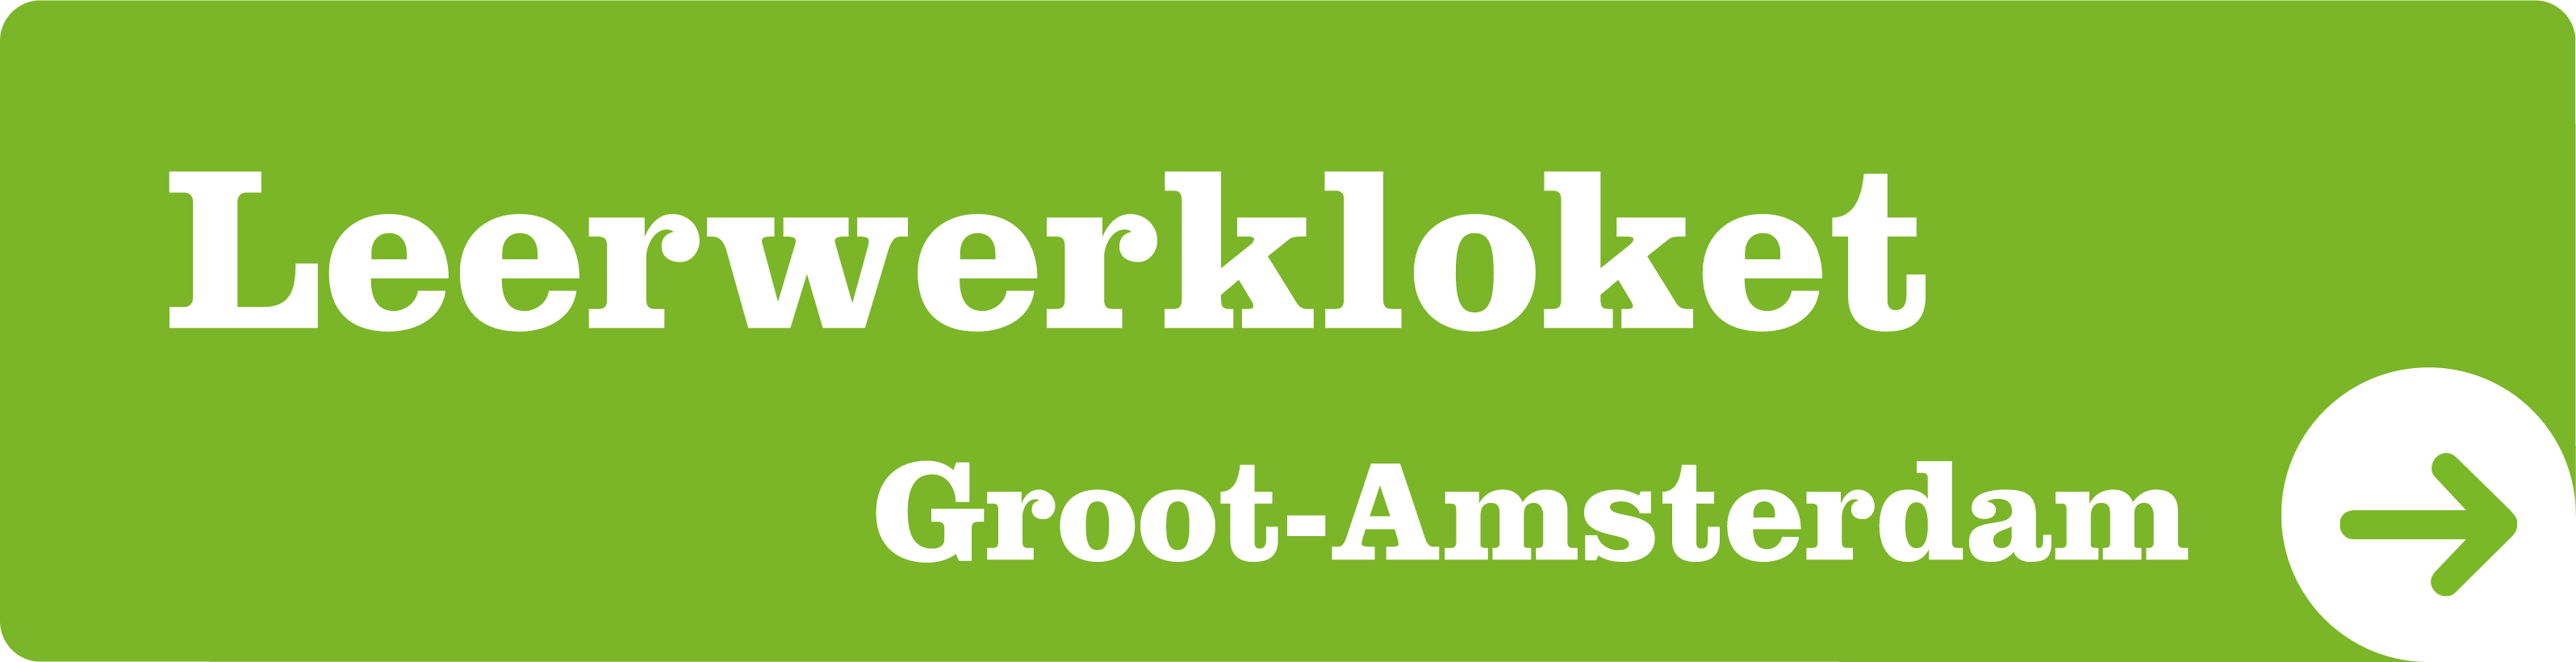 Leerwerkloket Groot-Amsterdam